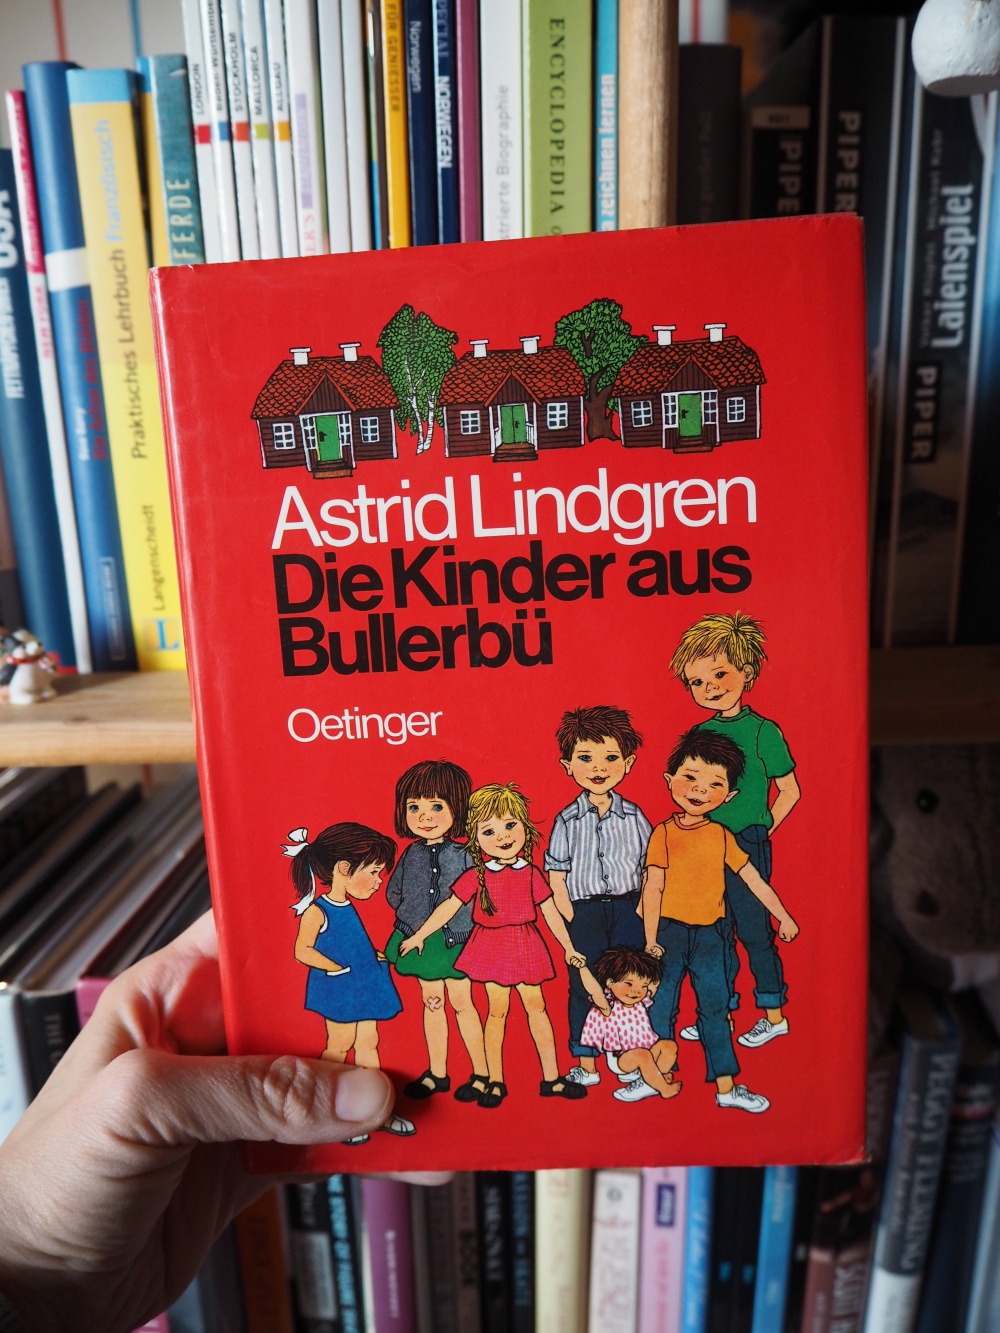 Die Kinder aus Bullerbü von Astrid Lindgren